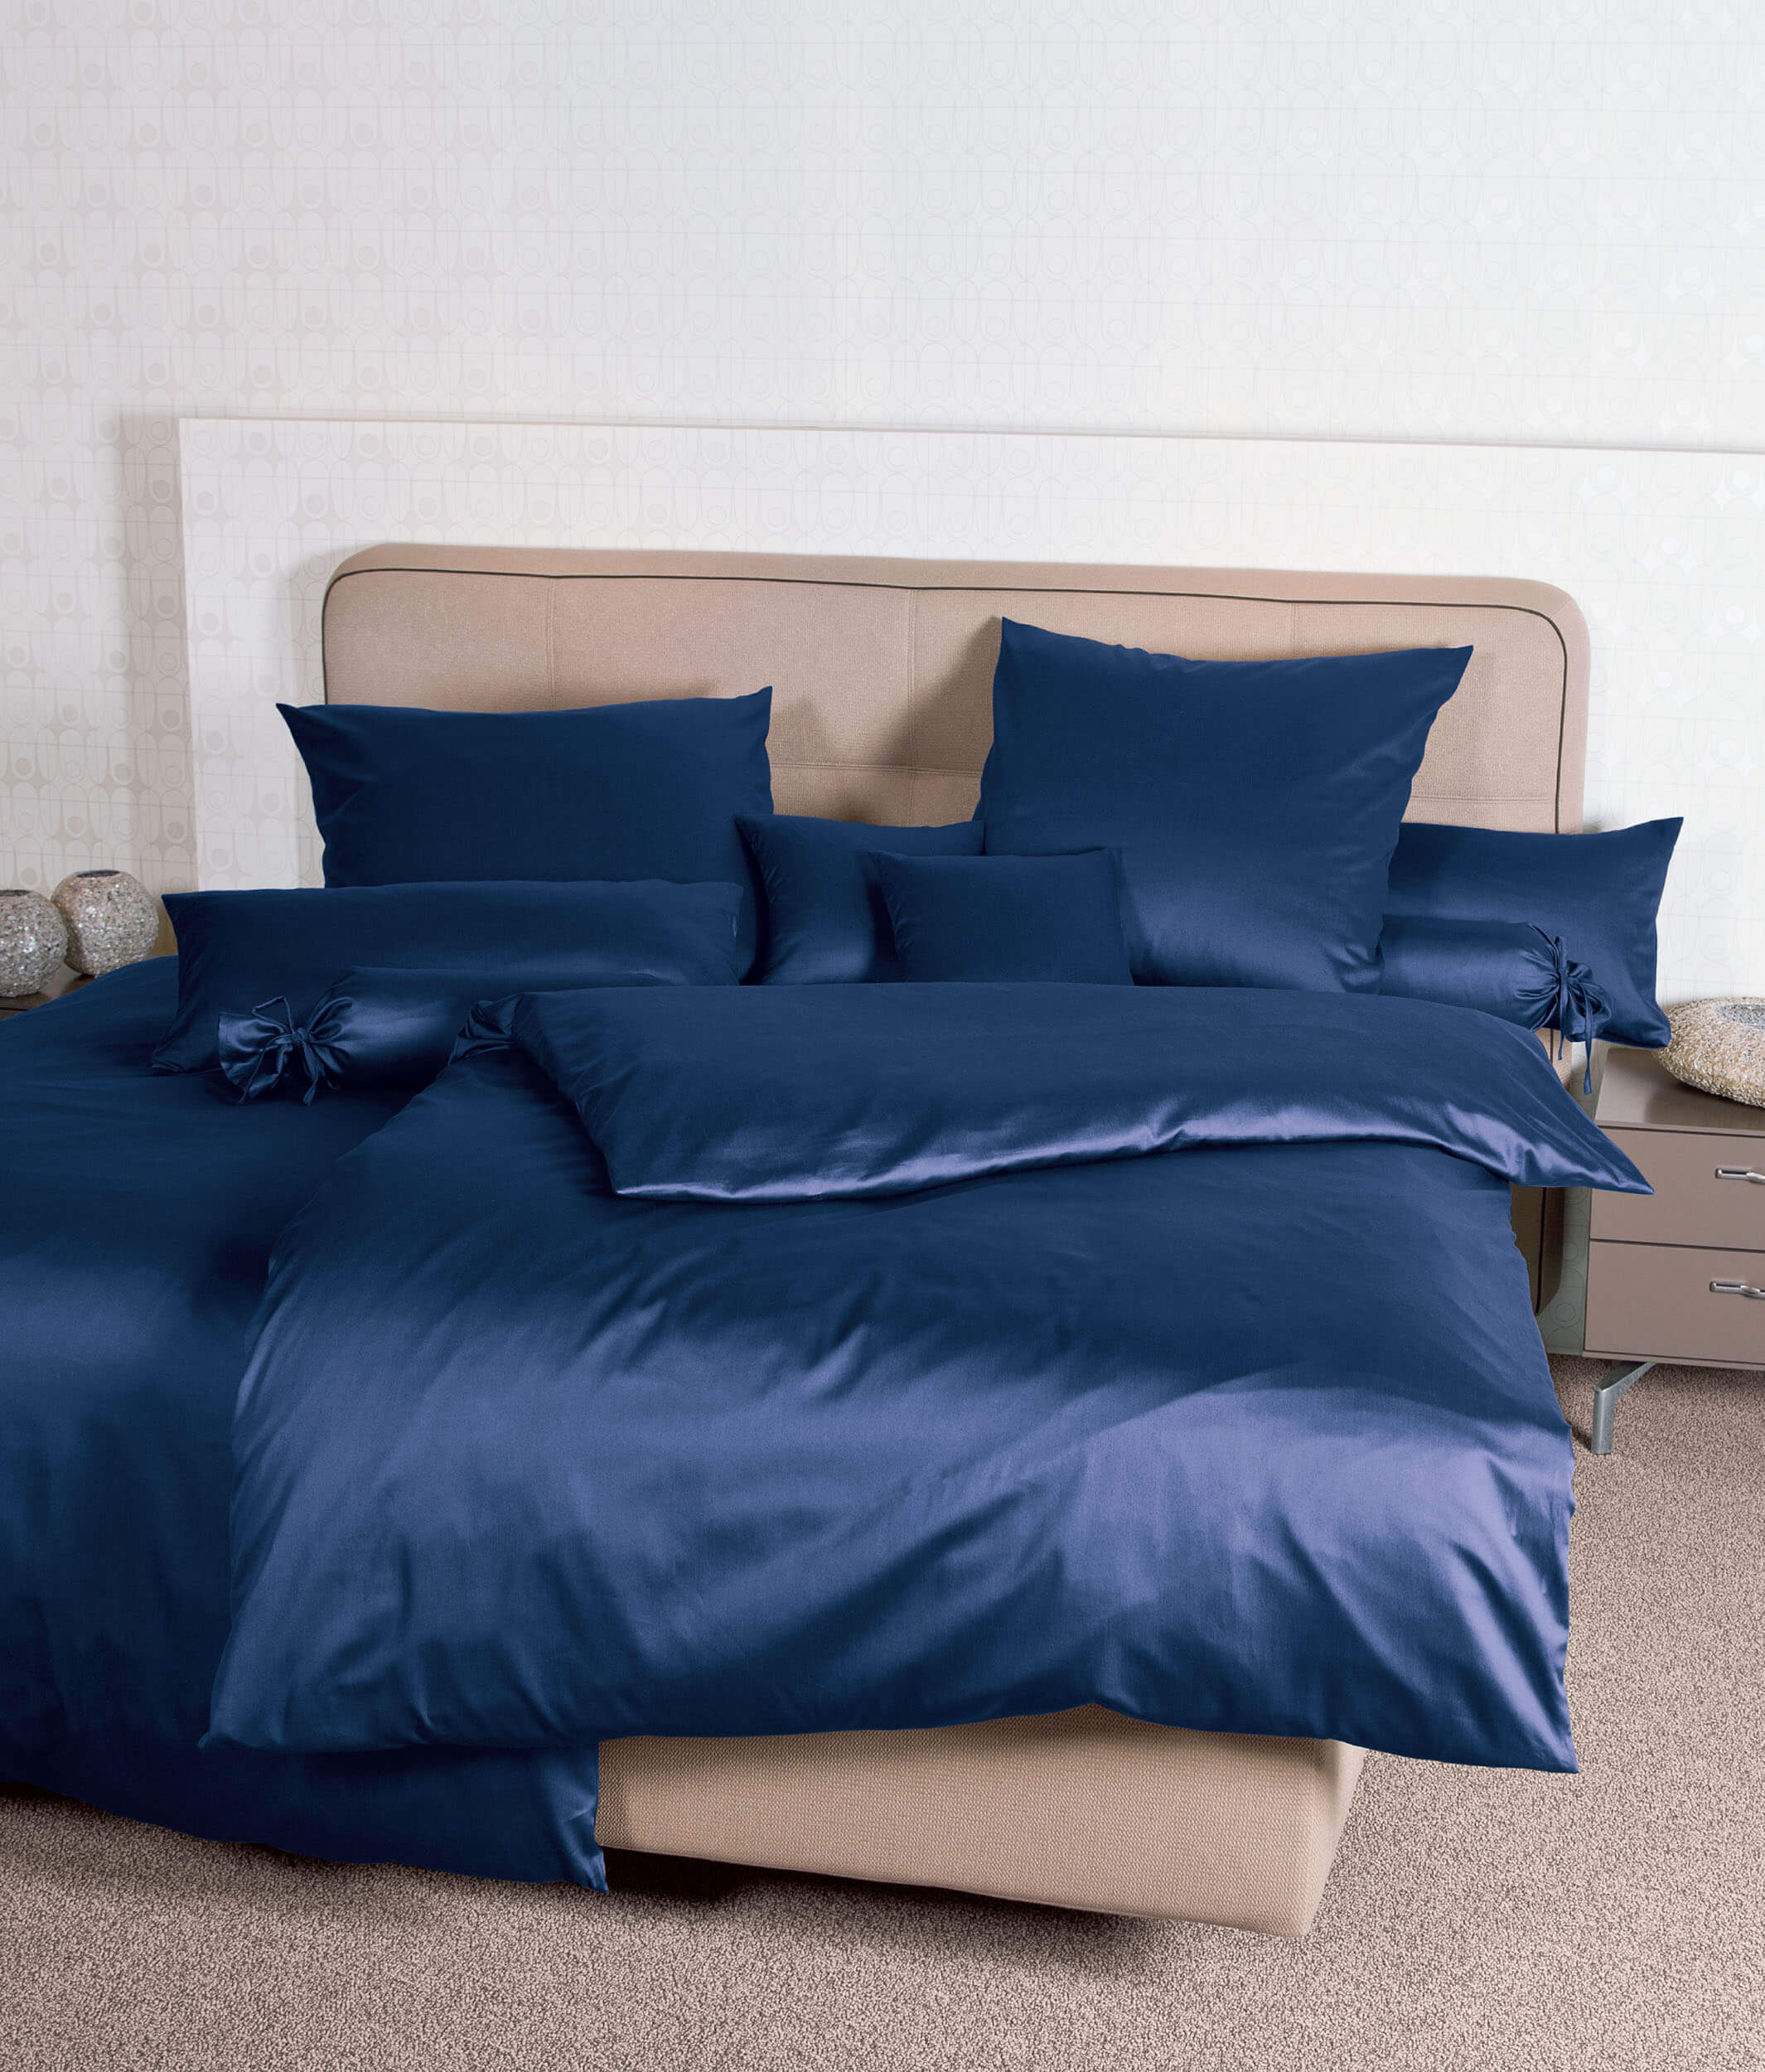 Синее постельное белье Colors Marine ☞ Размер пододеяльника: 200 x 220 см ☞ Размер простыни: Без простыни ☞ Размер наволочек: 50 x 70 см (2 шт.)